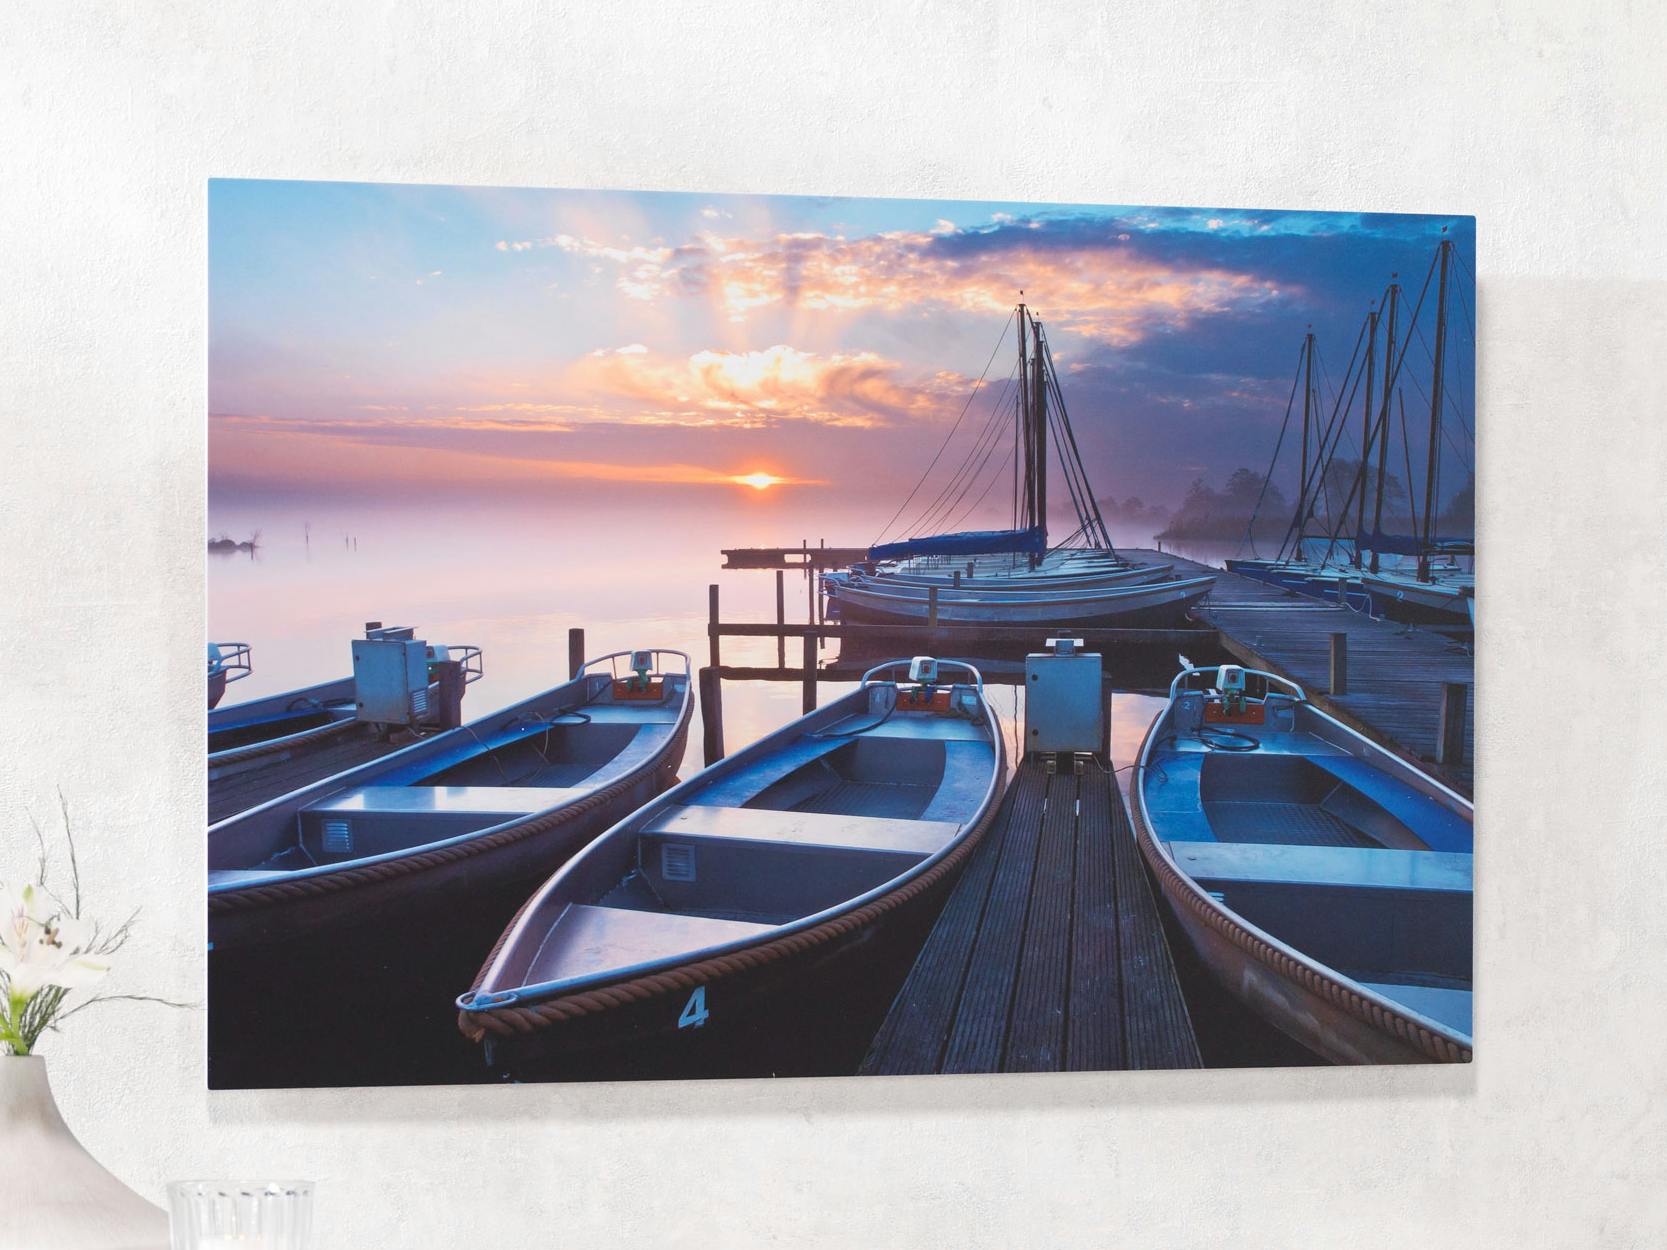 Tableau Forex avec une photo de barques sur un lac